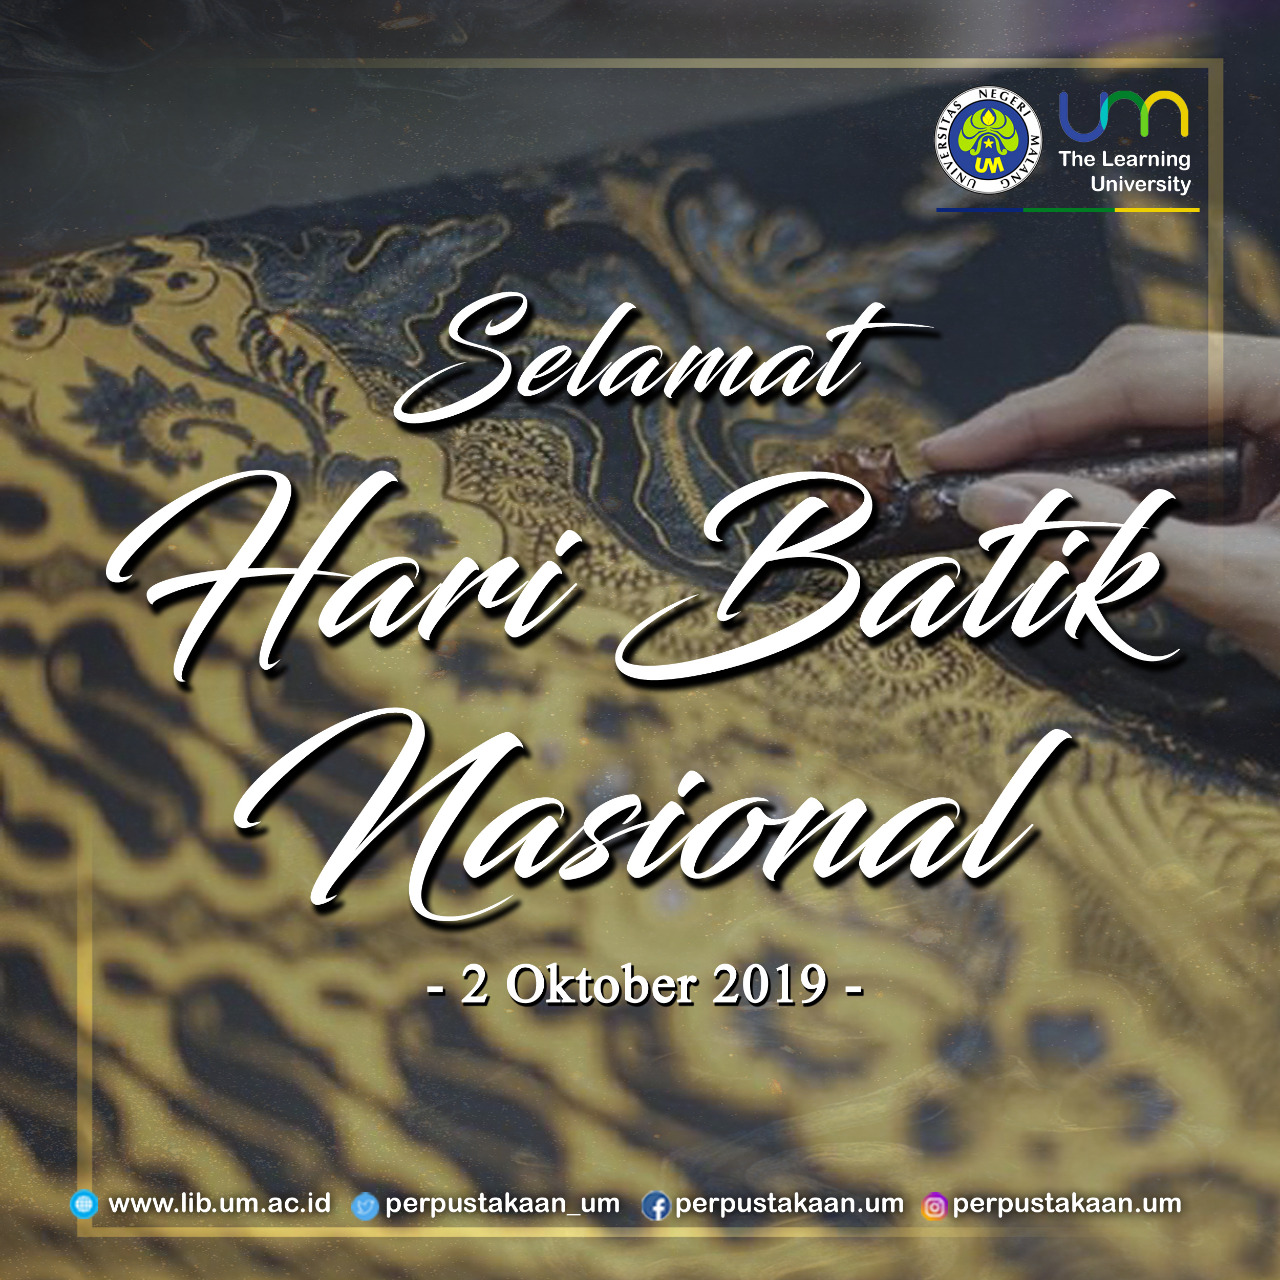 Selamat Hari Batik Nasional 2 Oktober 2019